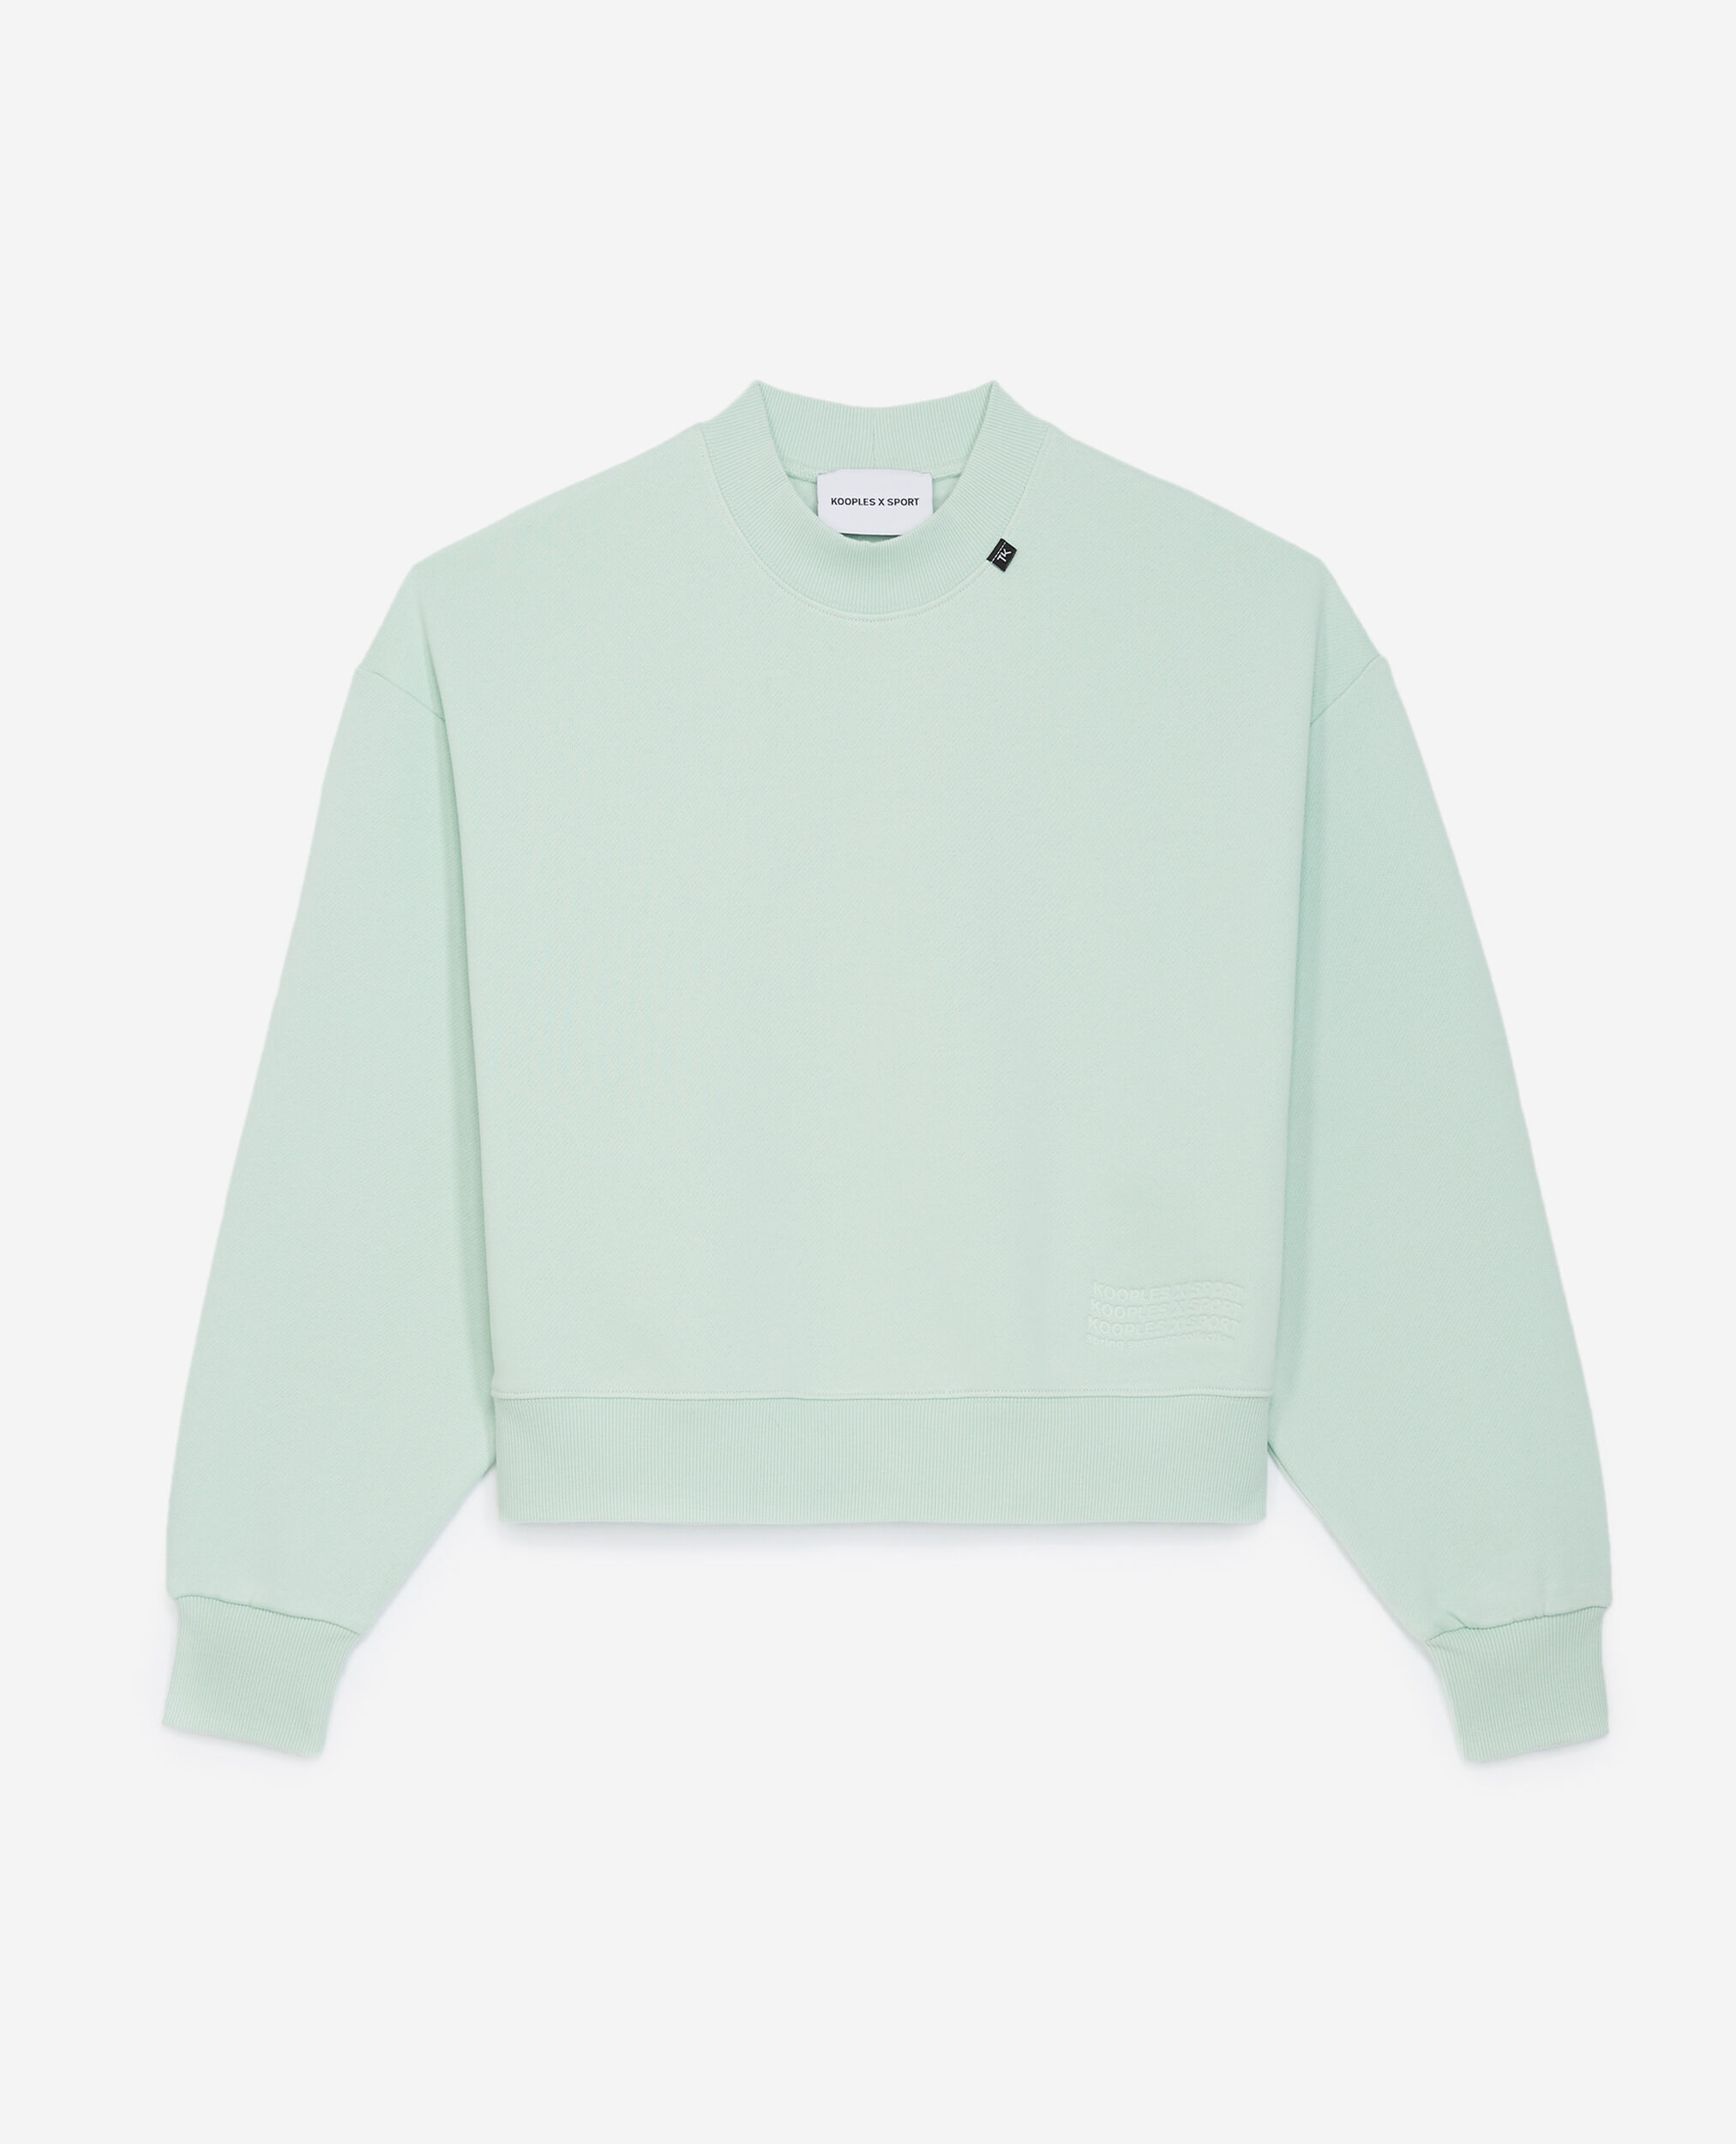 Sweatshirt vert à logo vague embossé, MINT, hi-res image number null